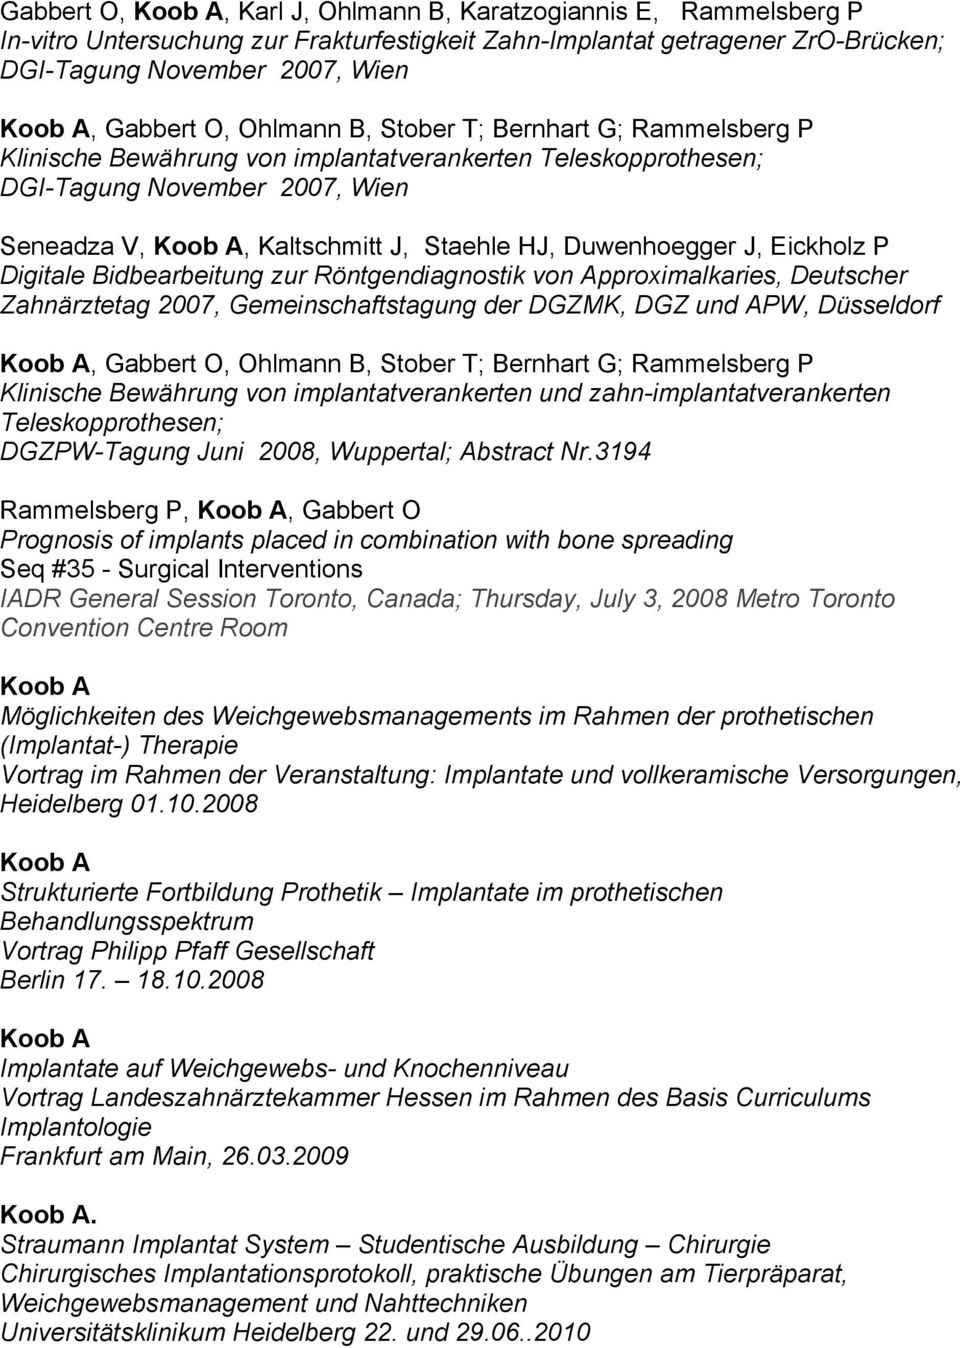 Digitale Bidbearbeitung zur Röntgendiagnostik von Approximalkaries, Deutscher Zahnärztetag 2007, Gemeinschaftstagung der DGZMK, DGZ und APW, Düsseldorf, Gabbert O, Ohlmann B, Stober T; Bernhart G;